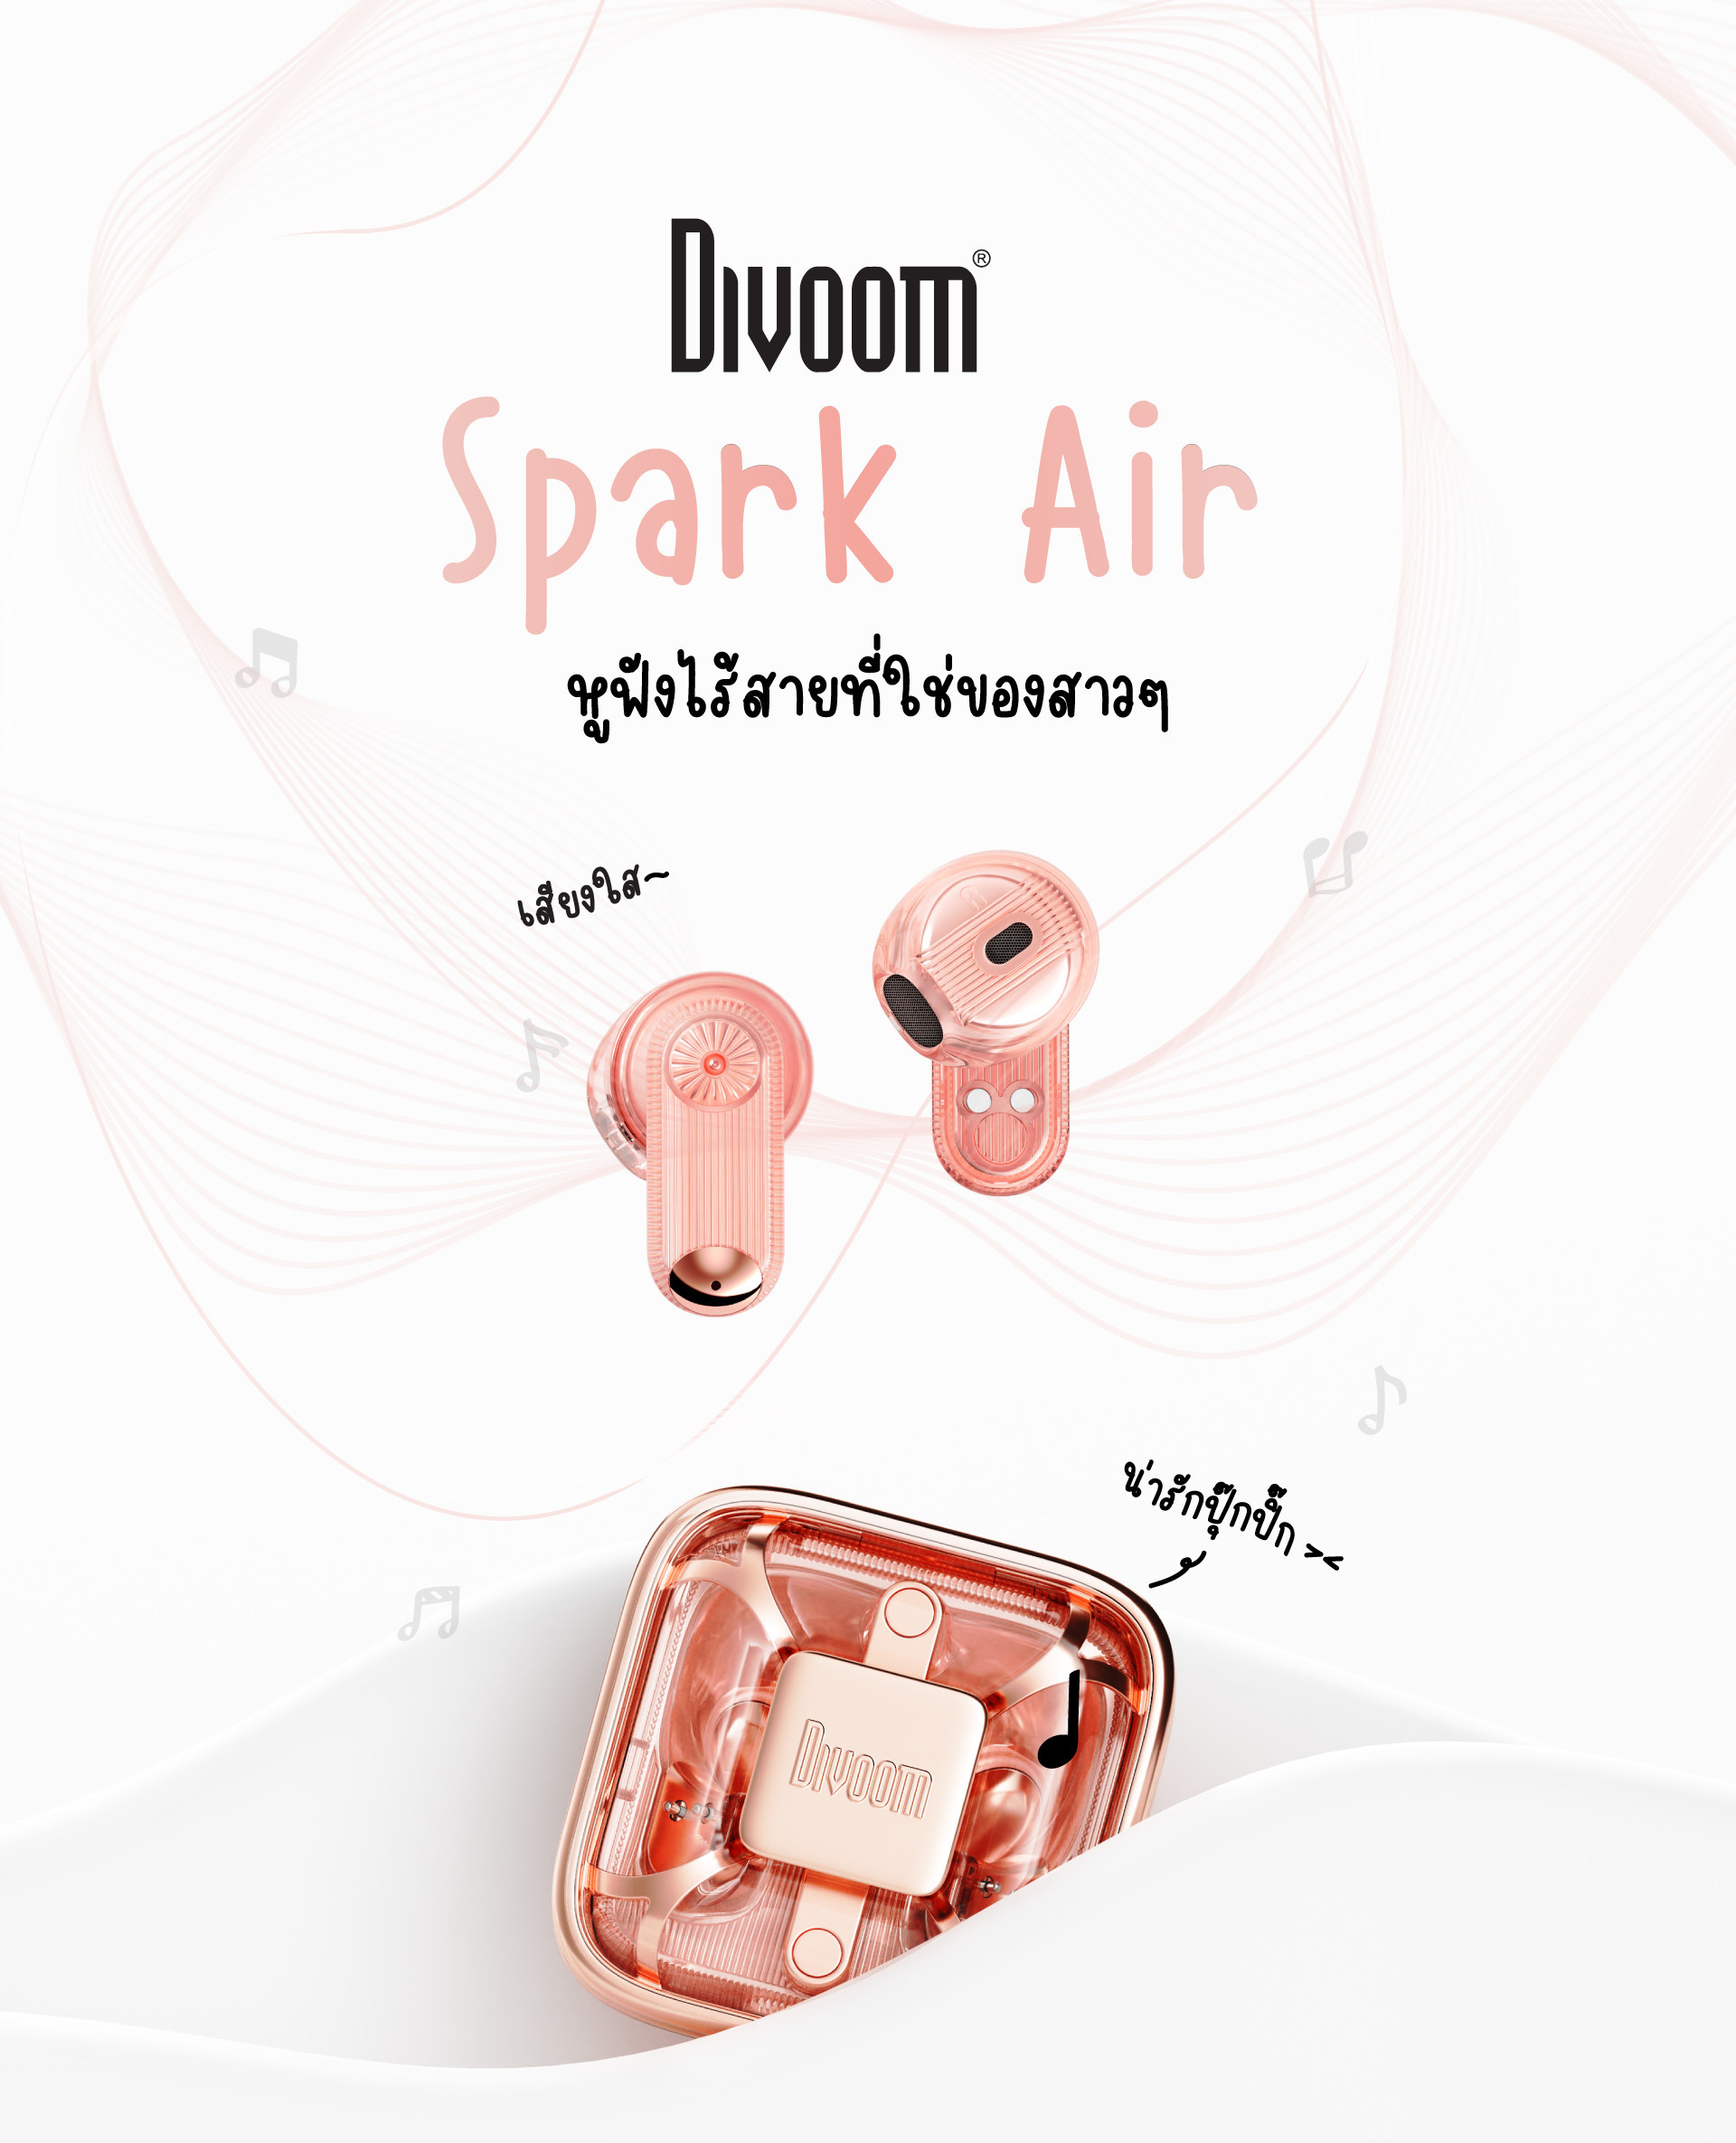 Divoom Spark Air หูฟังไร้สายน่ารัก เสียงใส งบเบาๆ ไม่เกิน 1500.-